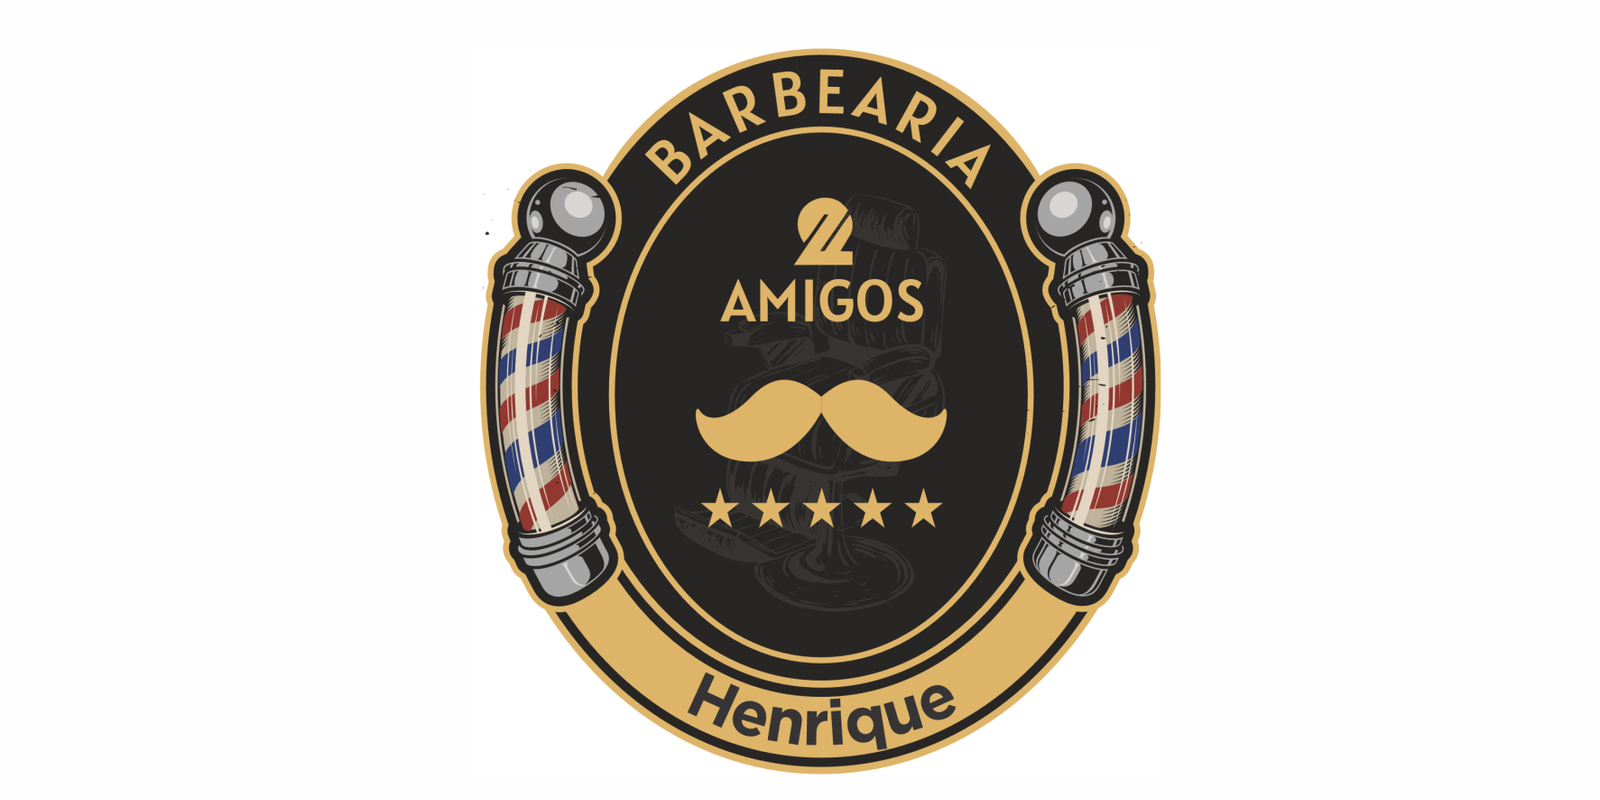 Barbearia 2 Amigos